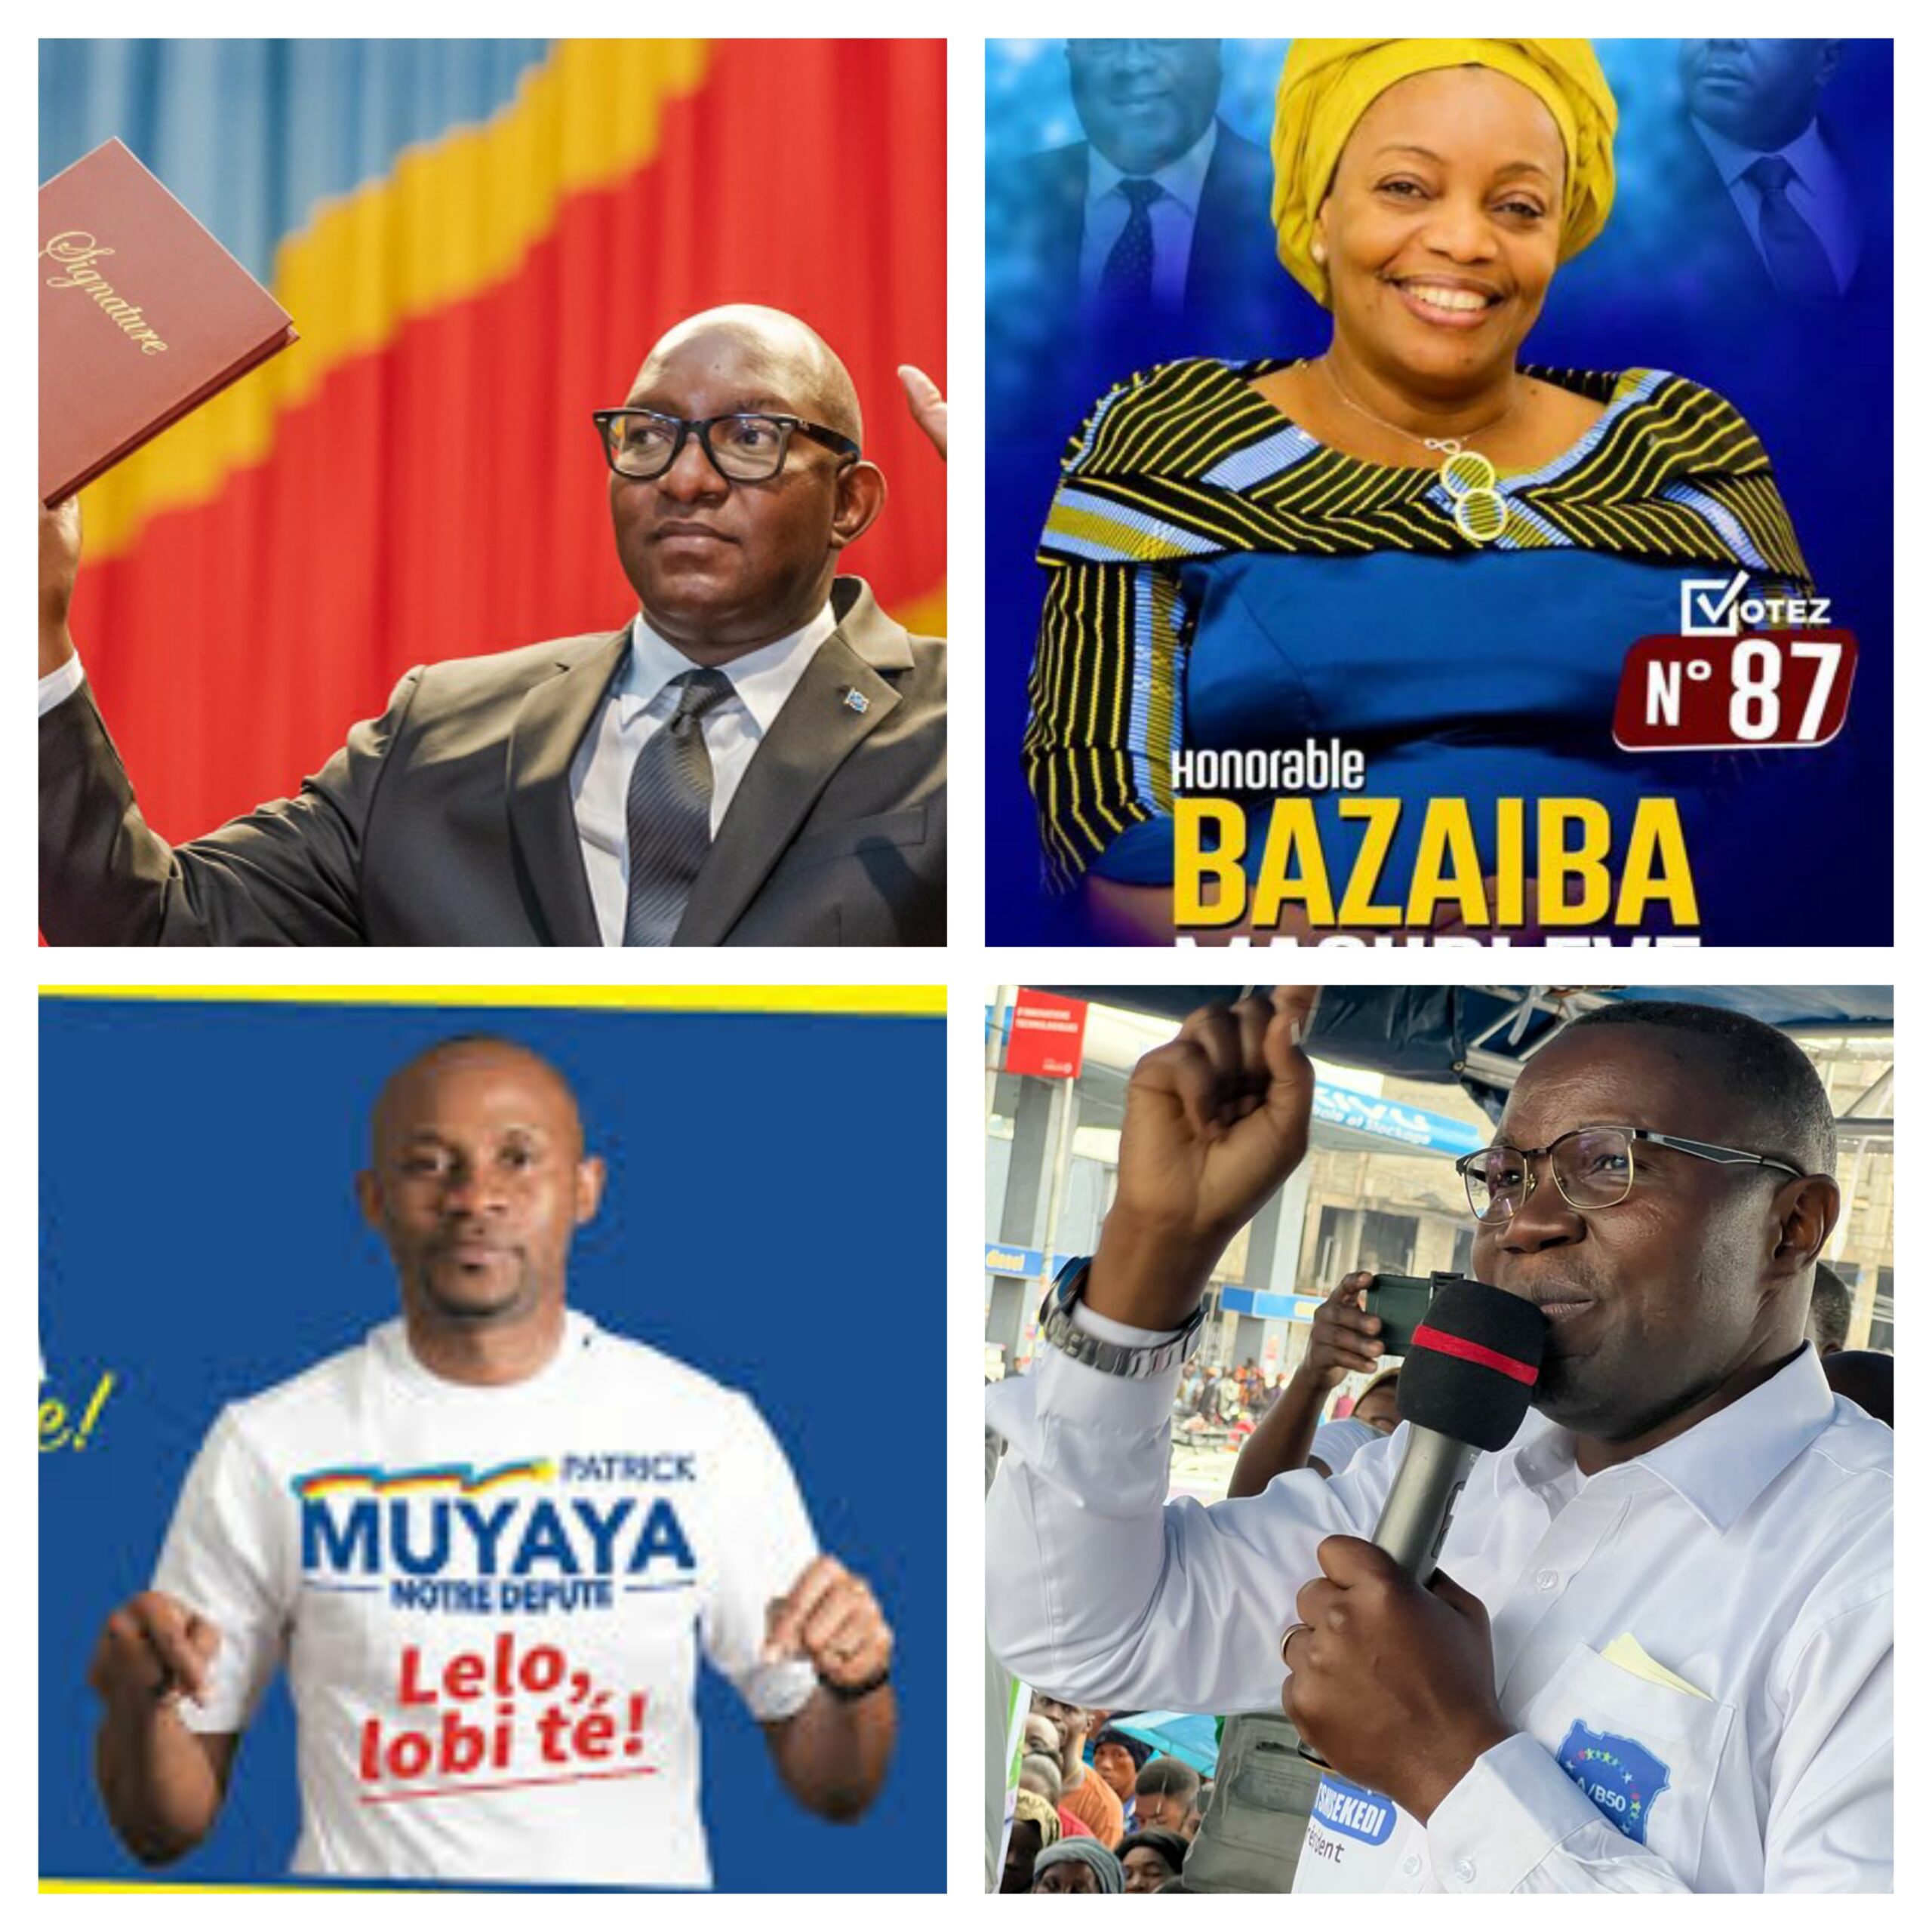 Le premier ministre Sama Lukonde Kyenge, Patrick Muyaya, Julien Paluku, Eve Bazaïba parmi les 32 membres du gouvernement élus aux législatives nationales